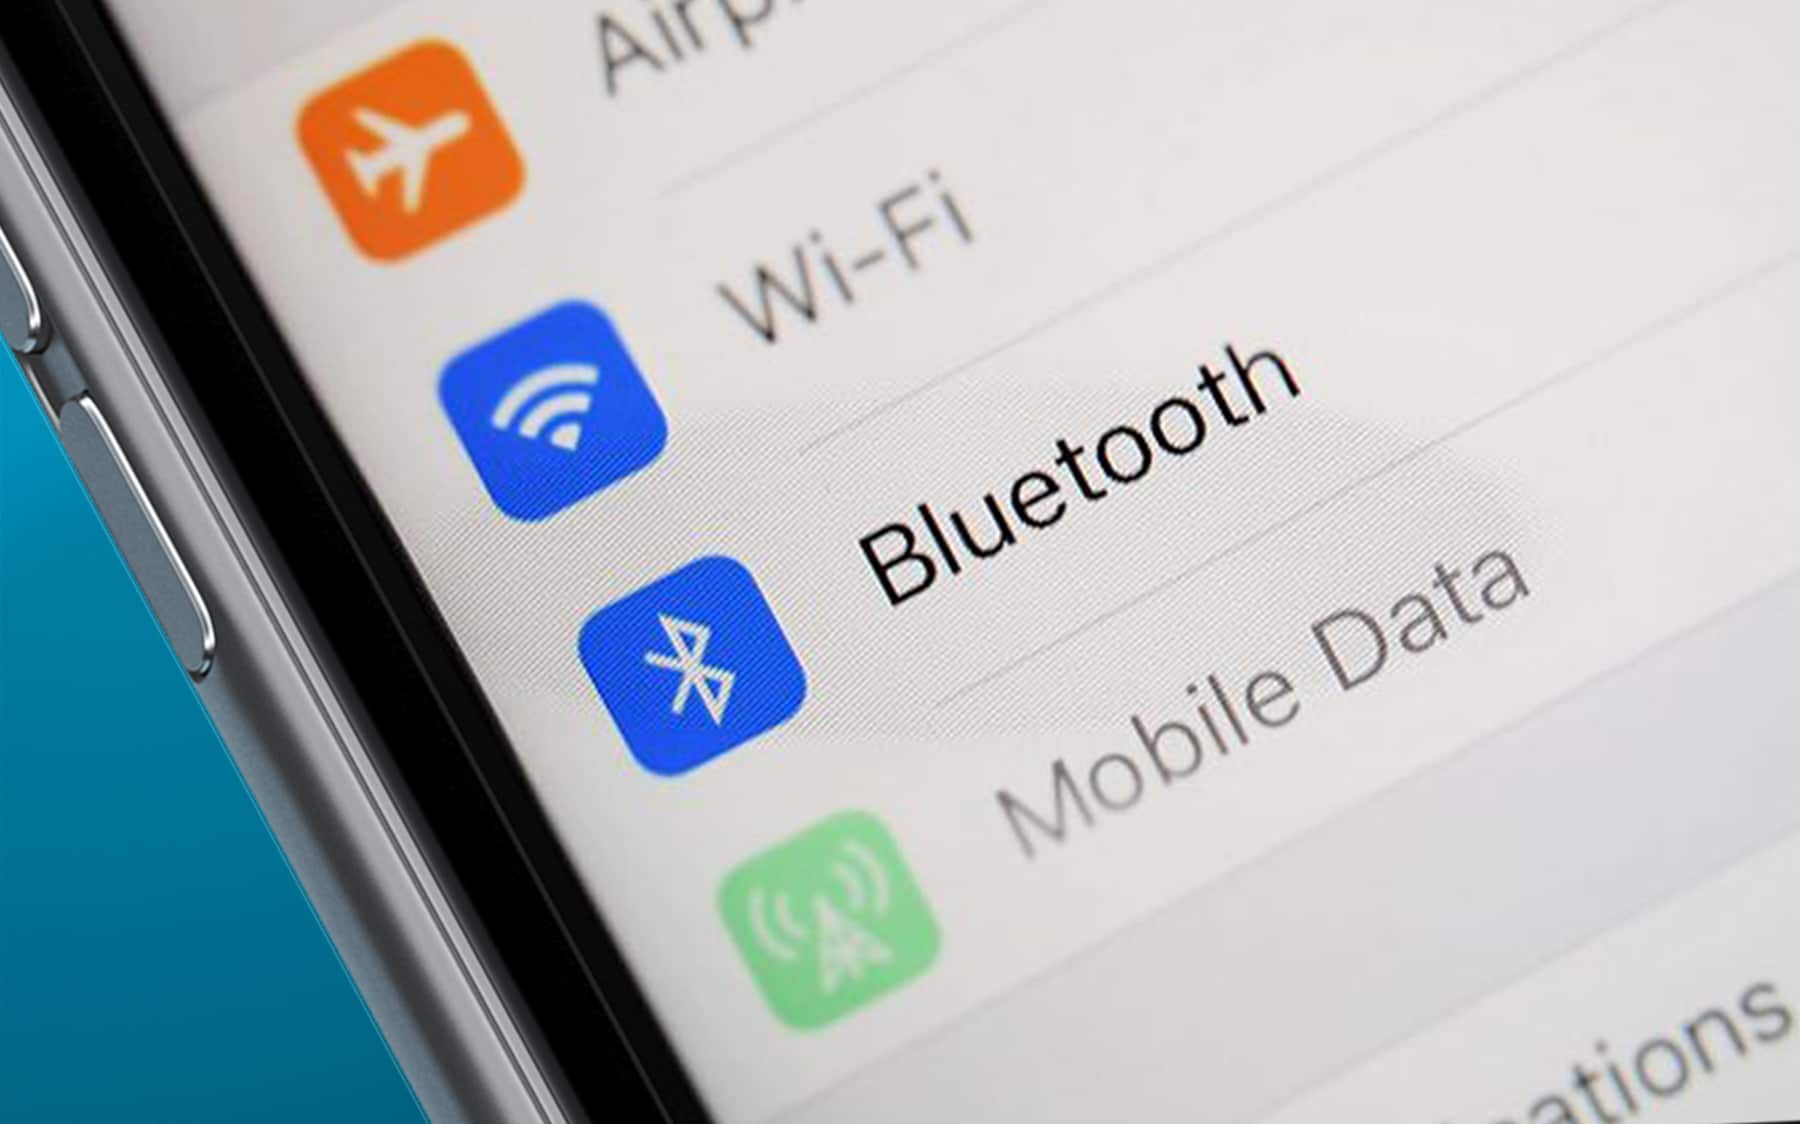 Bluetooth kaynaklı güvenlik açığı milyarlarca cihazı etkiledi